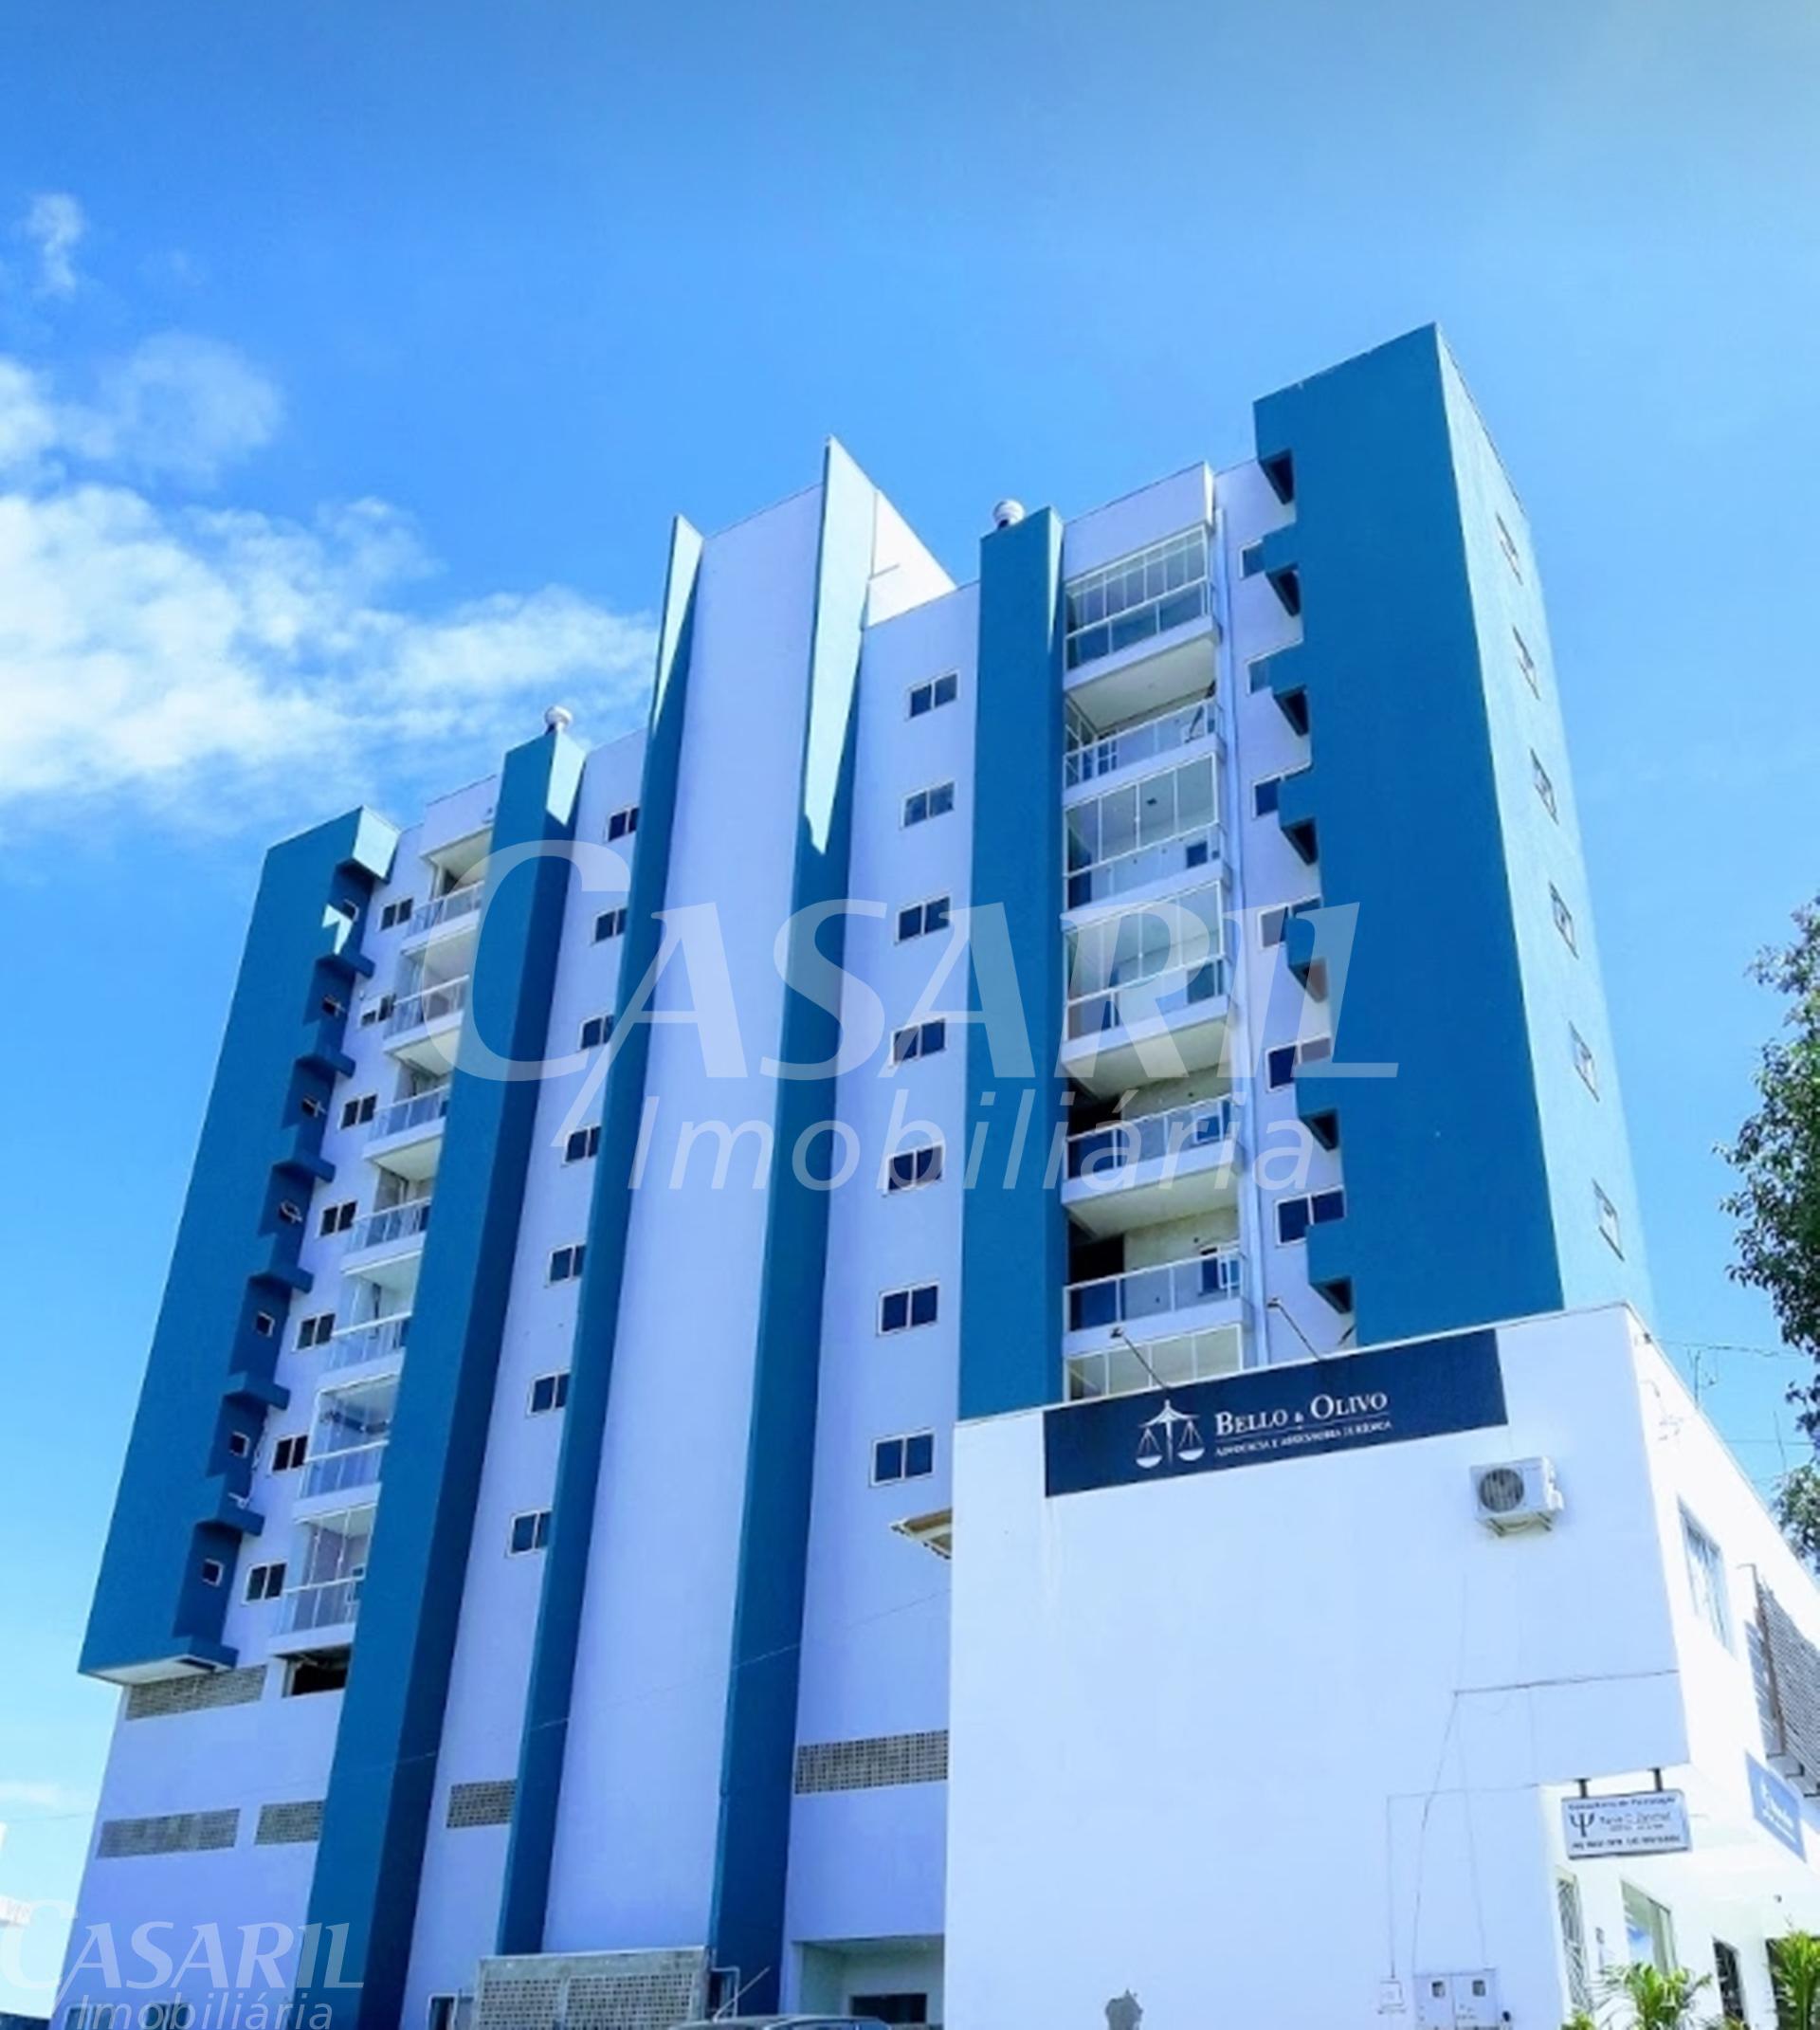 Apartamento Com 3 Dormitórios À Venda,180.00 M², Cango, Francisco Beltrao - Pr